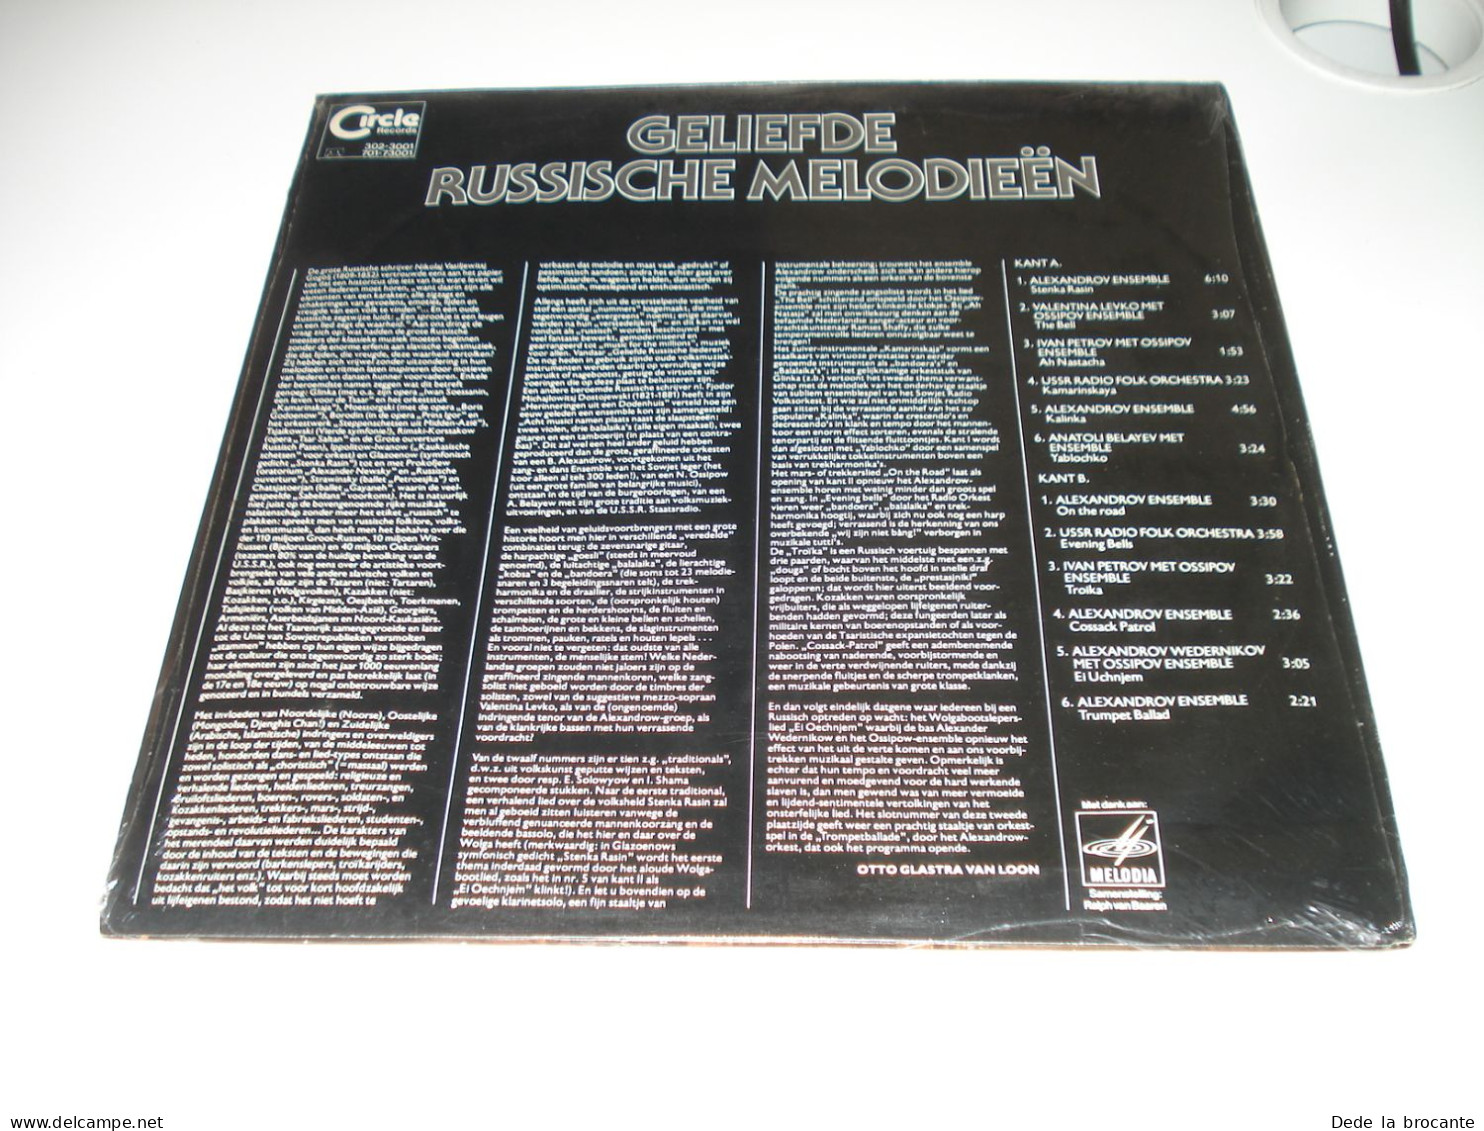 B6 / Geliefde Russische Melodieën - 302-3001 - Holland 1978 - Sealed - MINT - Wereldmuziek